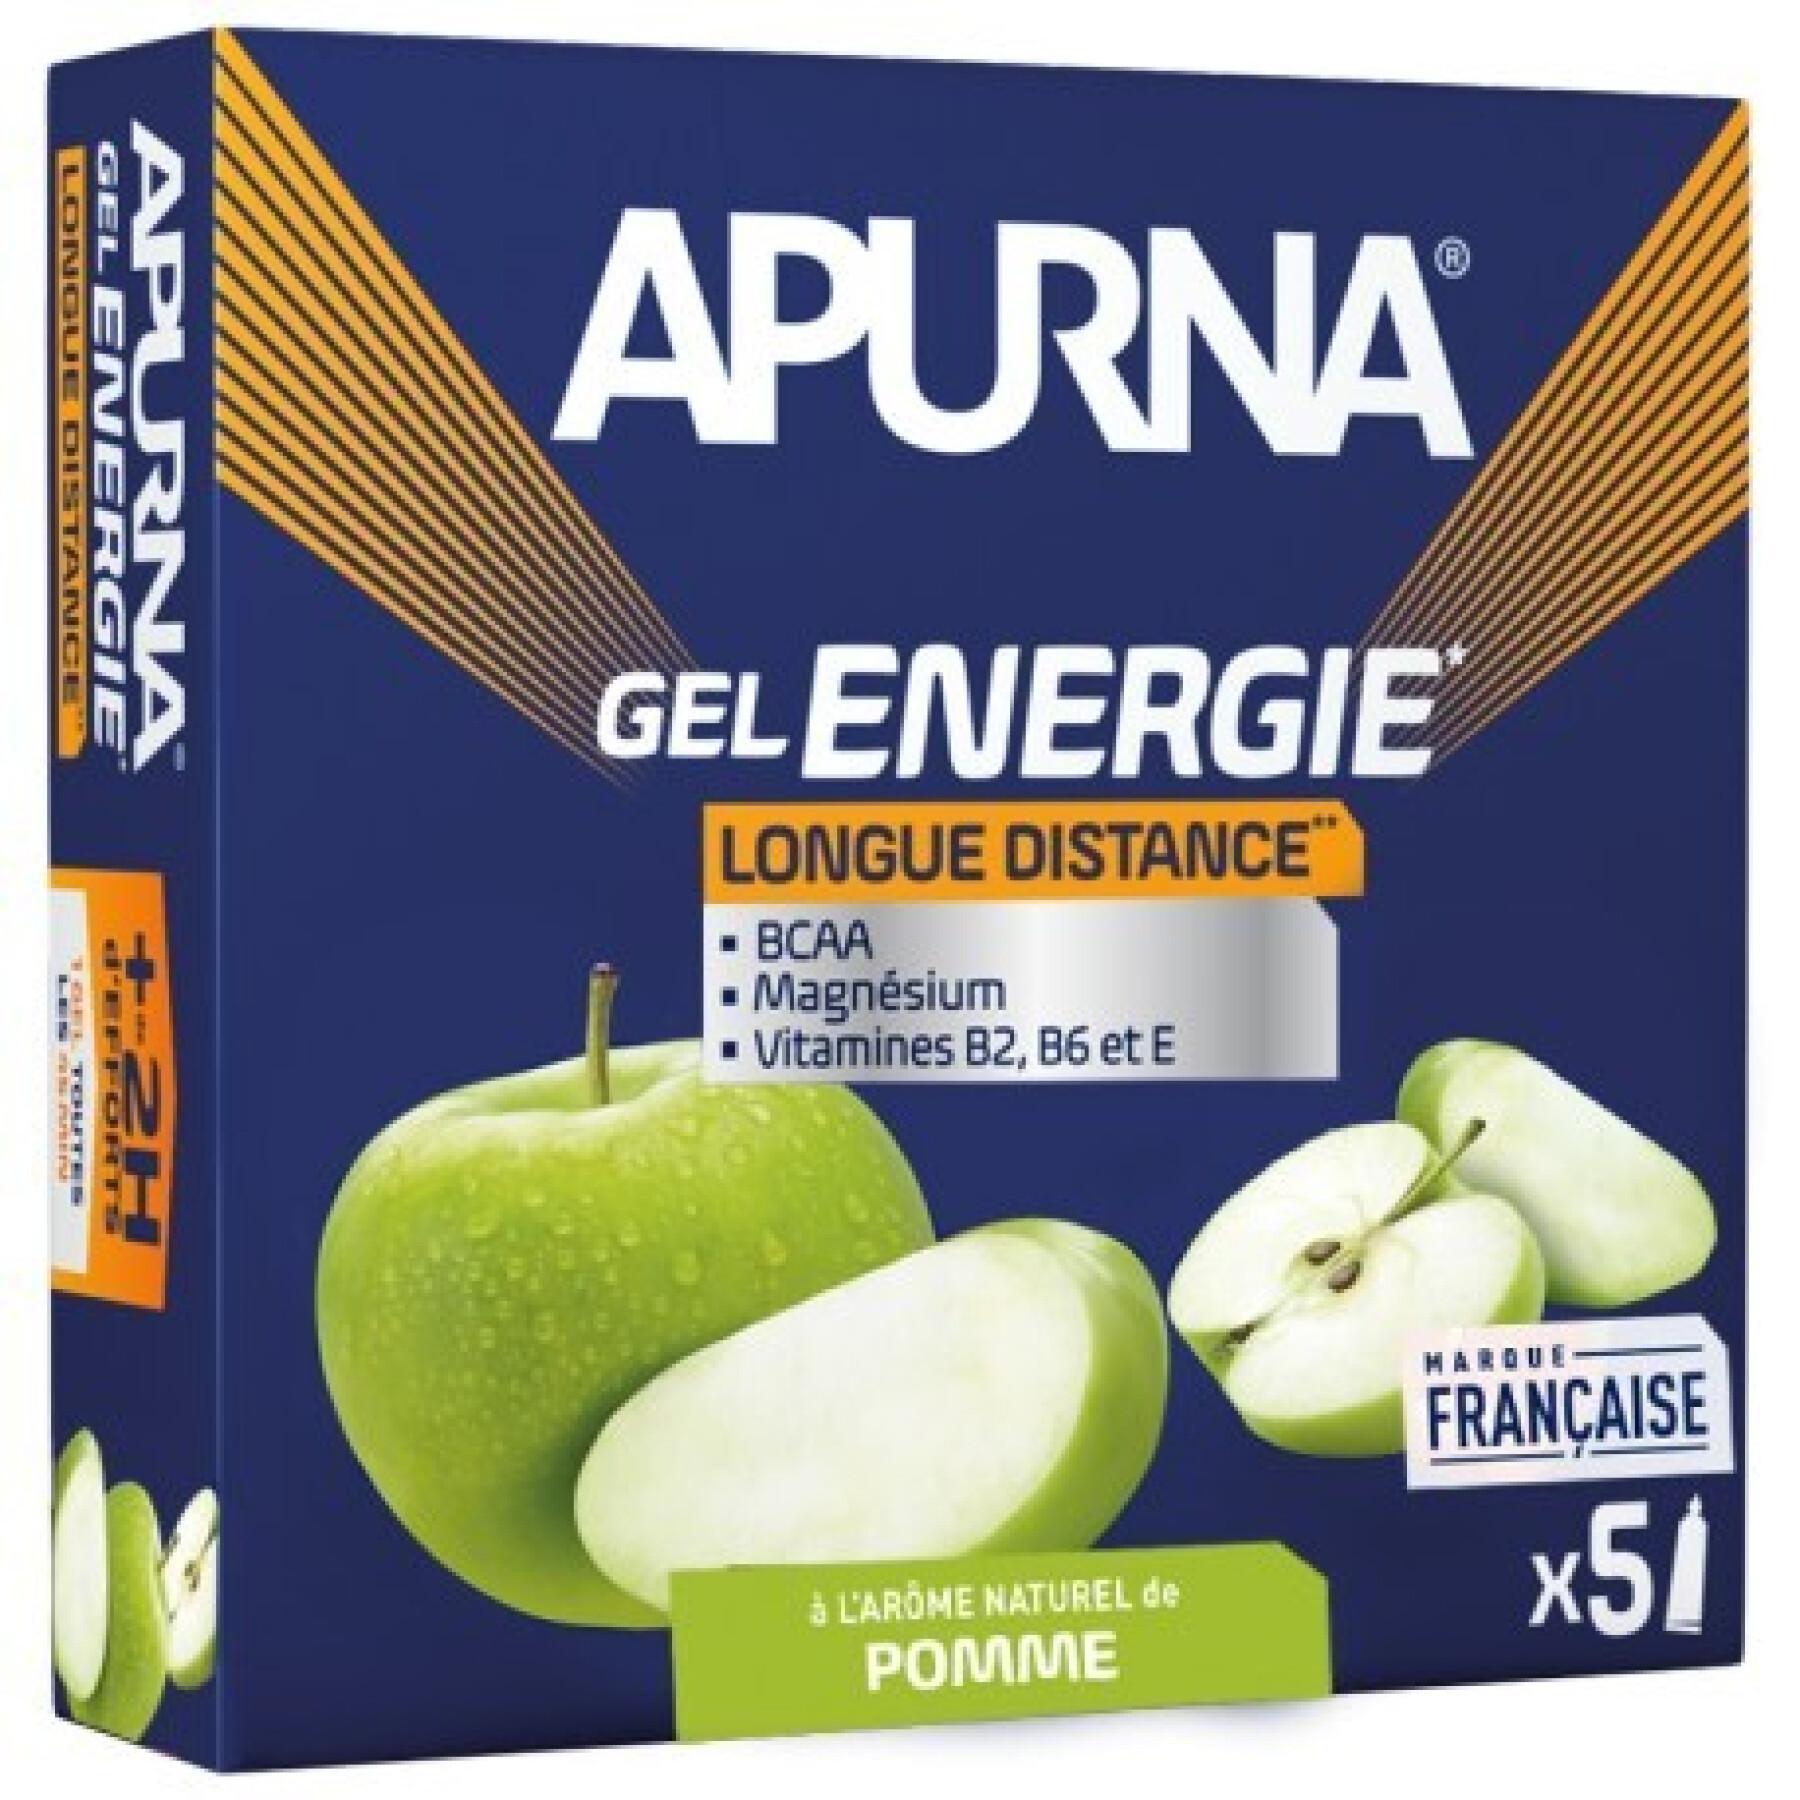 Zestaw 5 żeli energetycznych na długie dystanse zielone jabłko +2h wysiłku Apurna